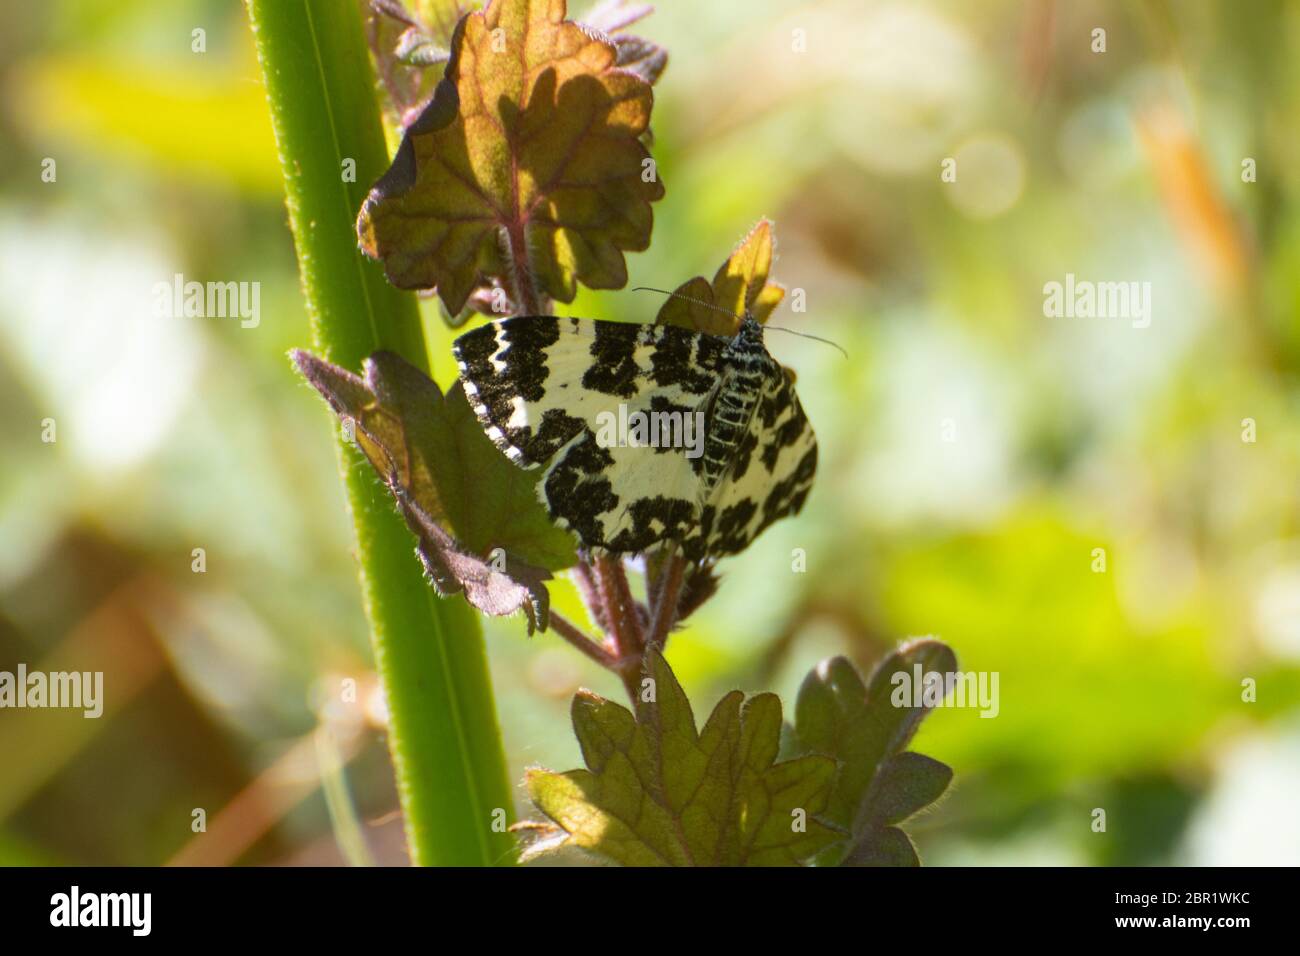 Falena argente e sabra (Rhumaptera hastate), una falena di giorno della famiglia Geometridae con marcature bianche e nere, Regno Unito Foto Stock